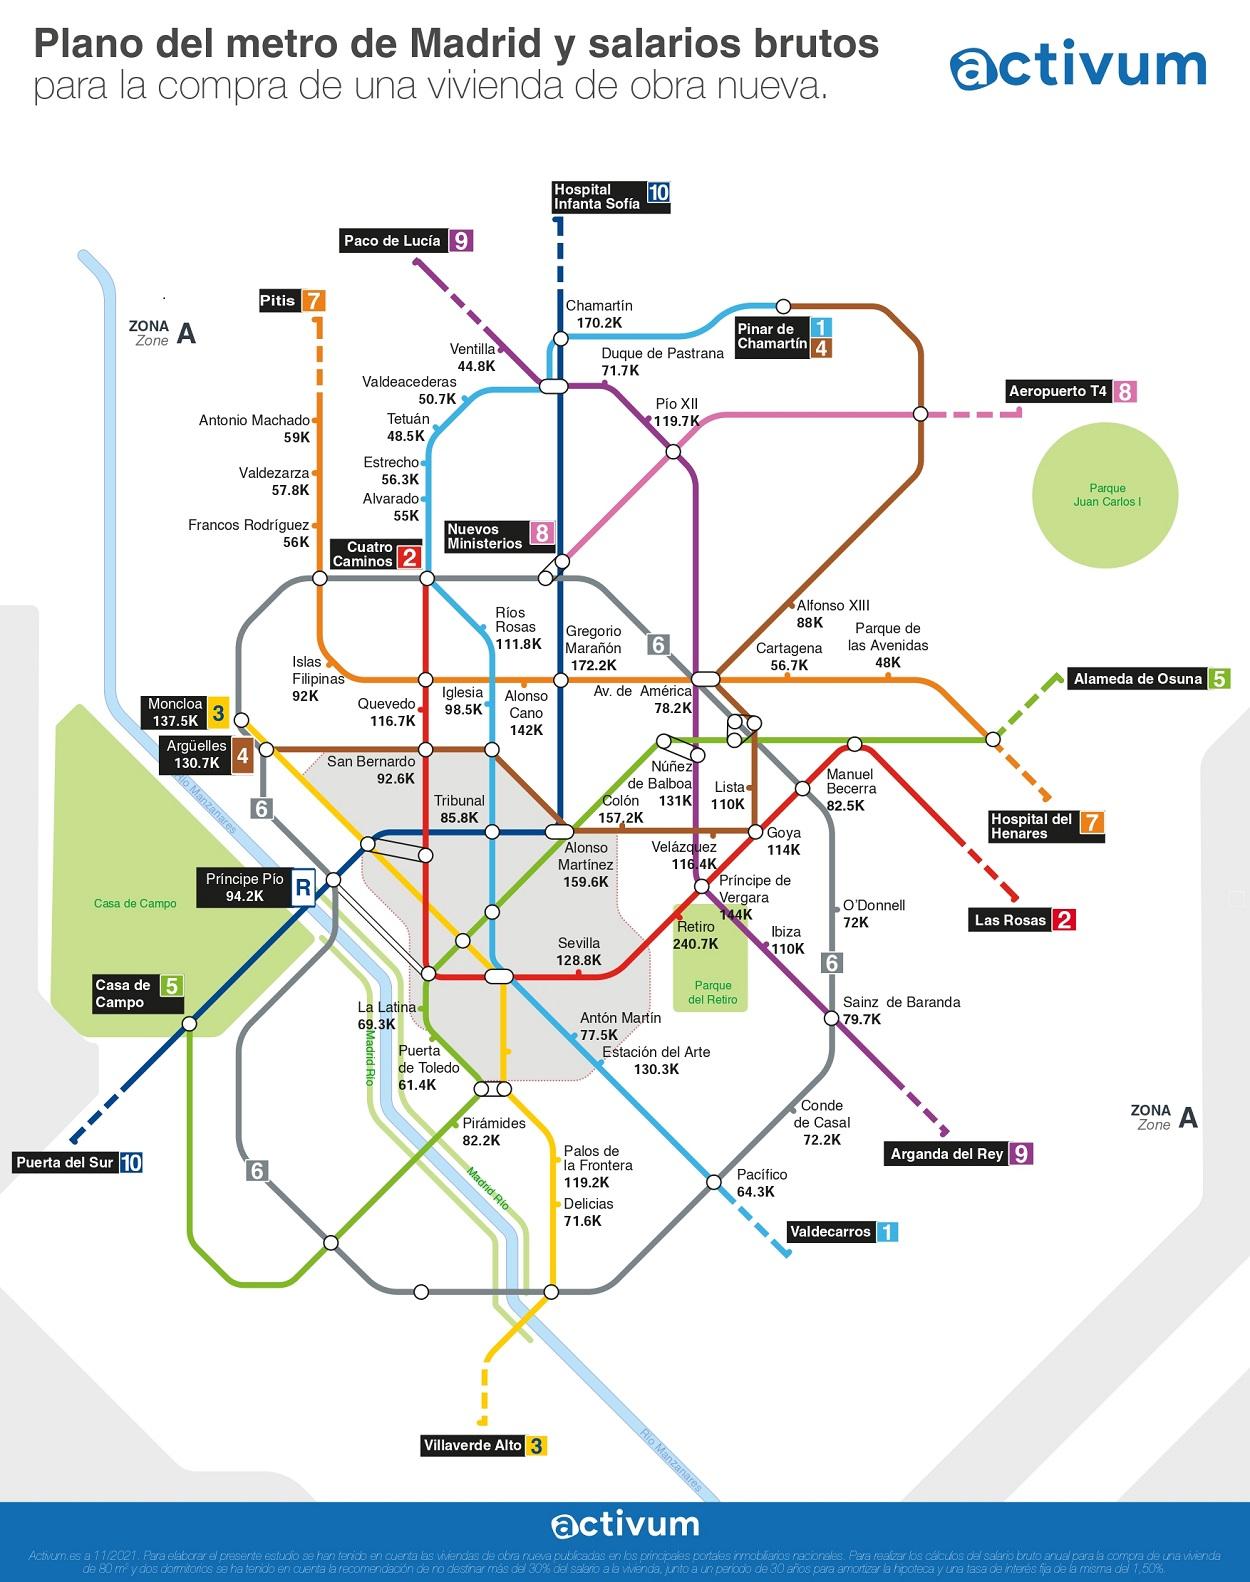 Plano del metro de Madrid y salarios brutos para la compra de una vivienda de obra nueva. Fuente Activum